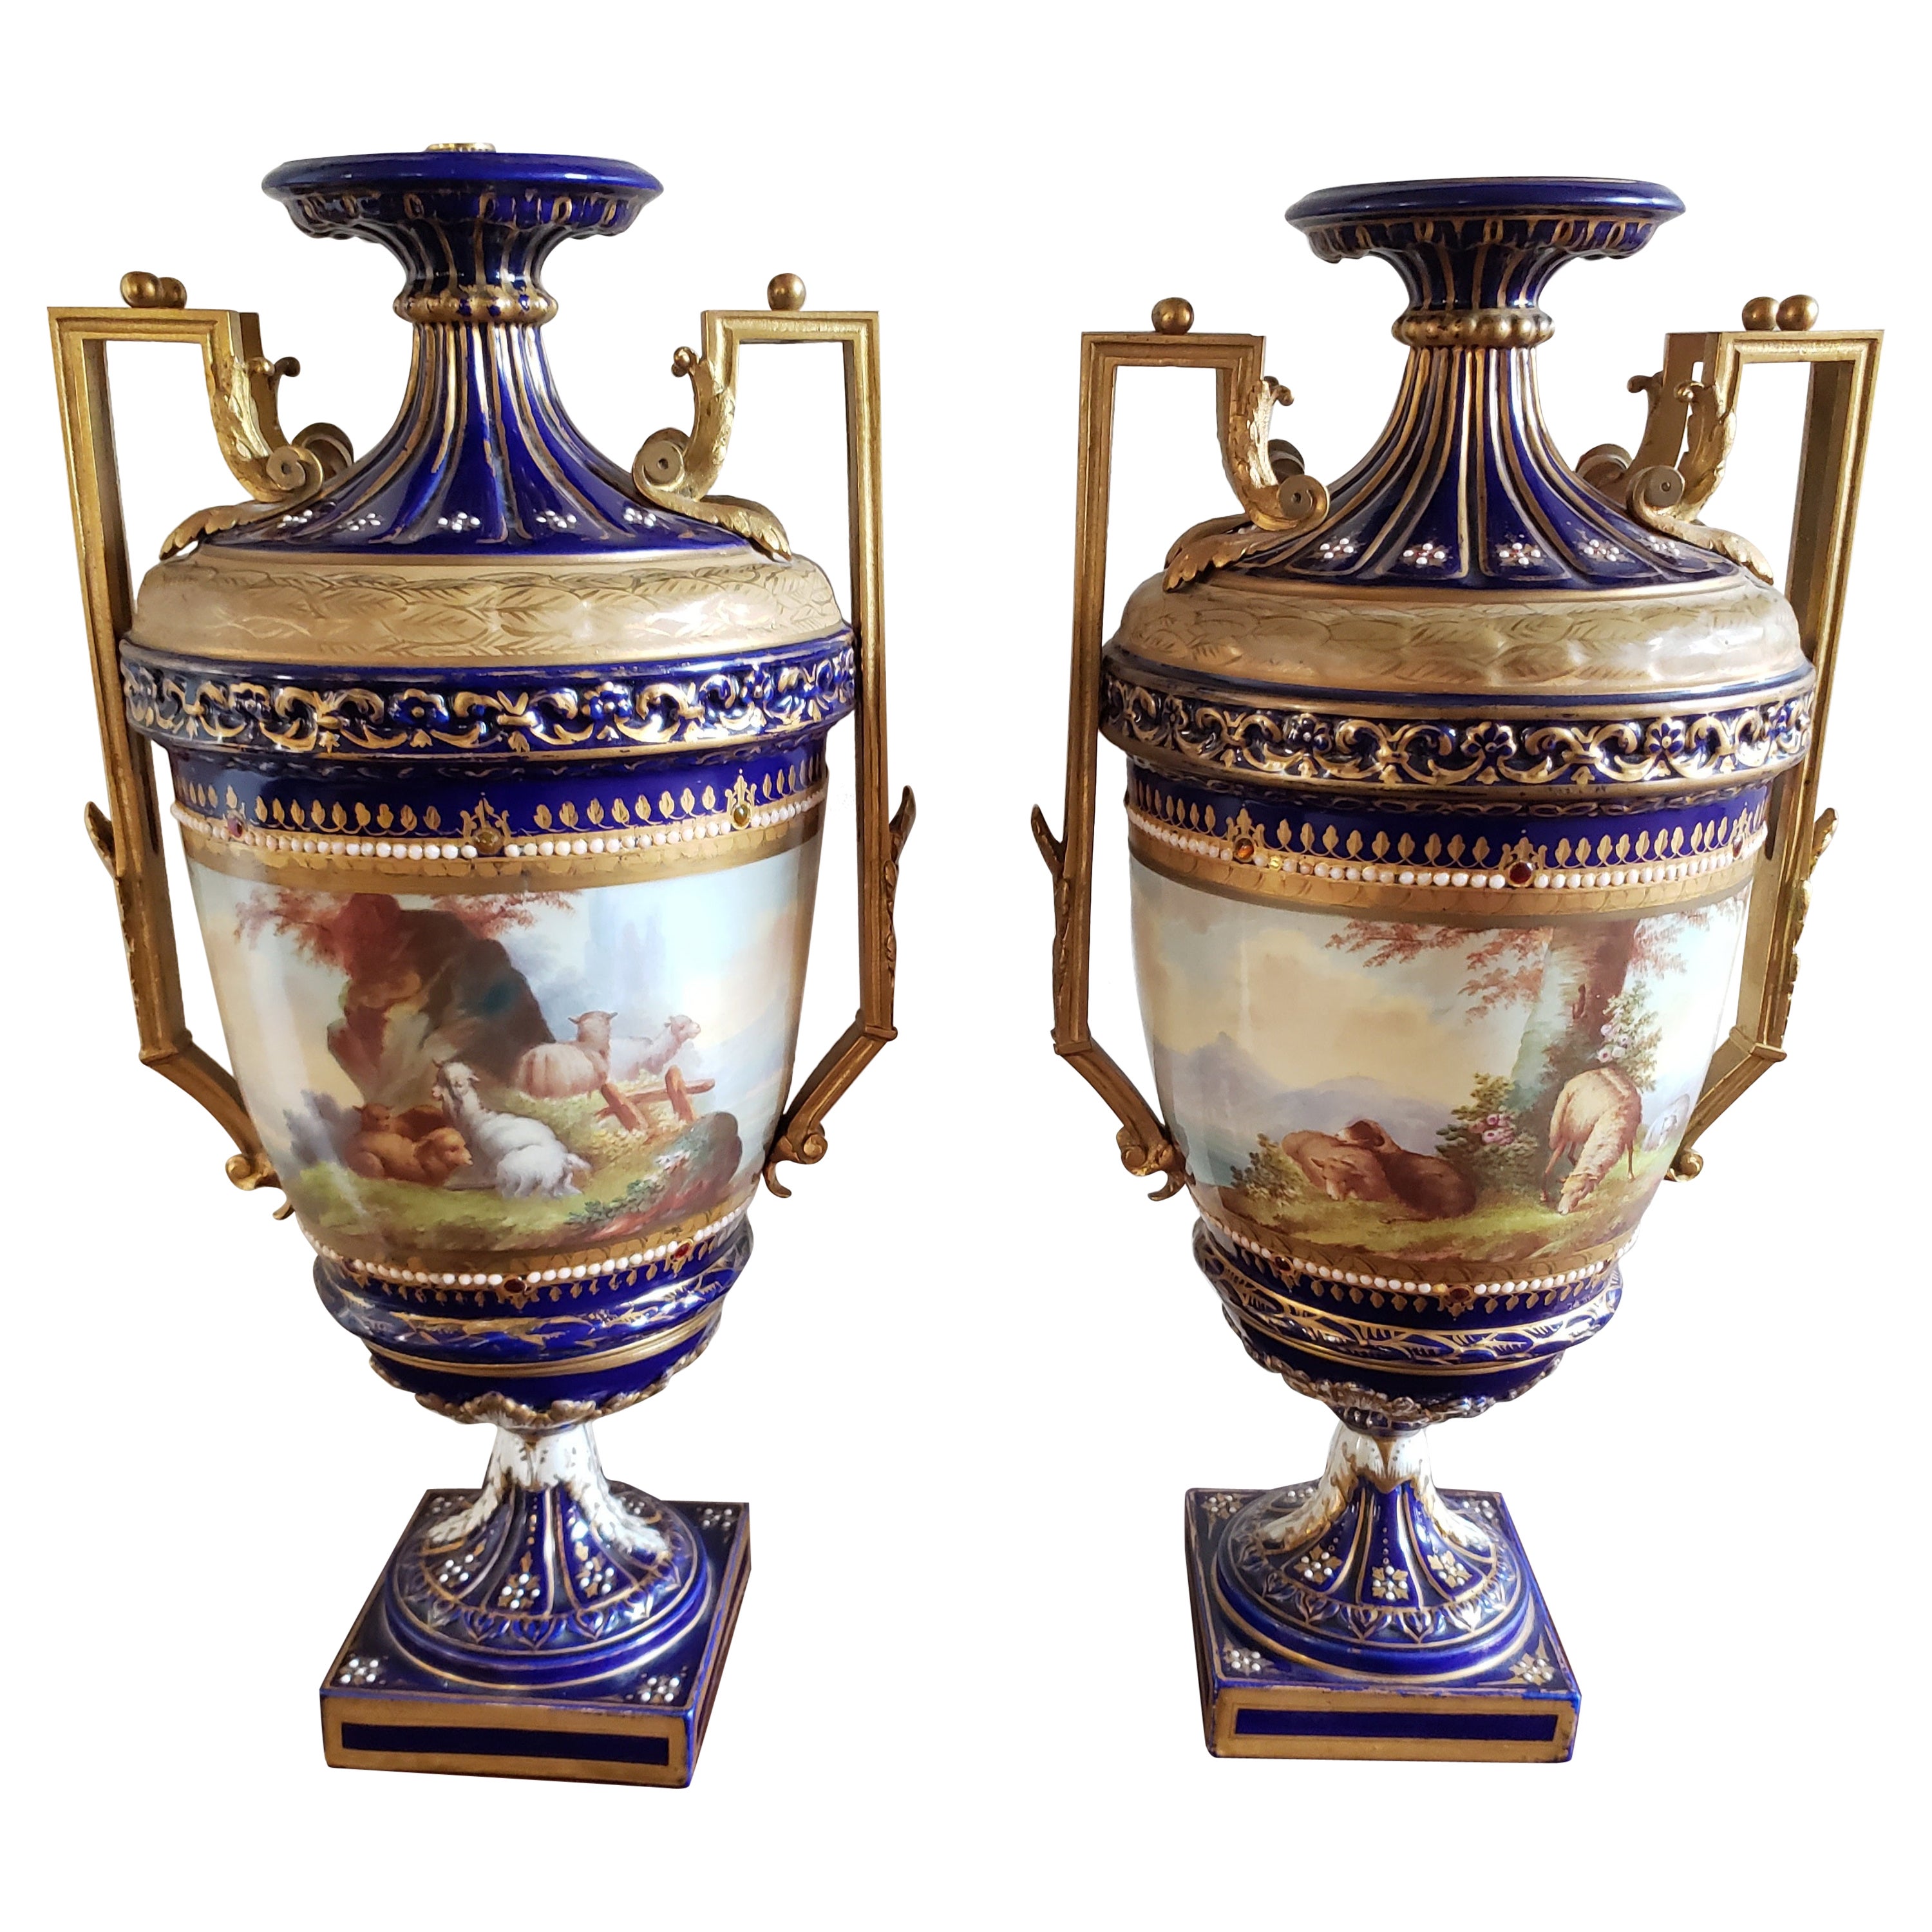 Paire d'urnes en porcelaine de Sèvres du 19ème siècle peintes à la main et décorées de cobalt et de dorure